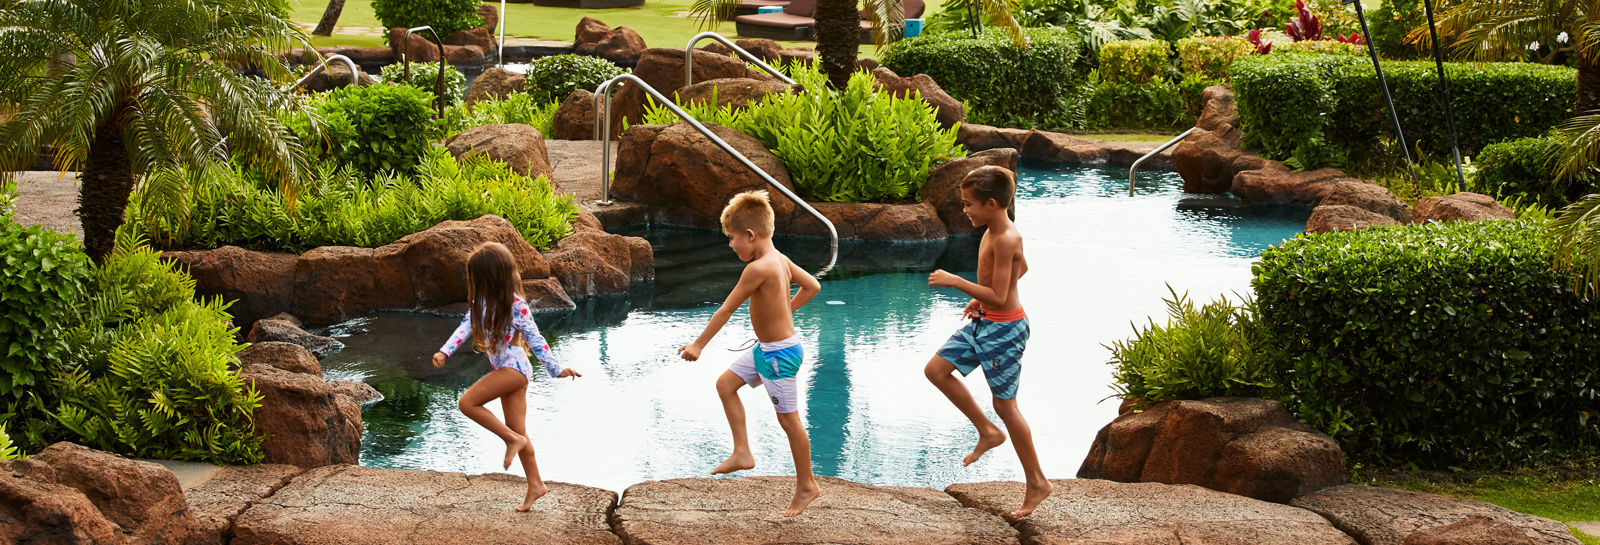 kauai resort pool